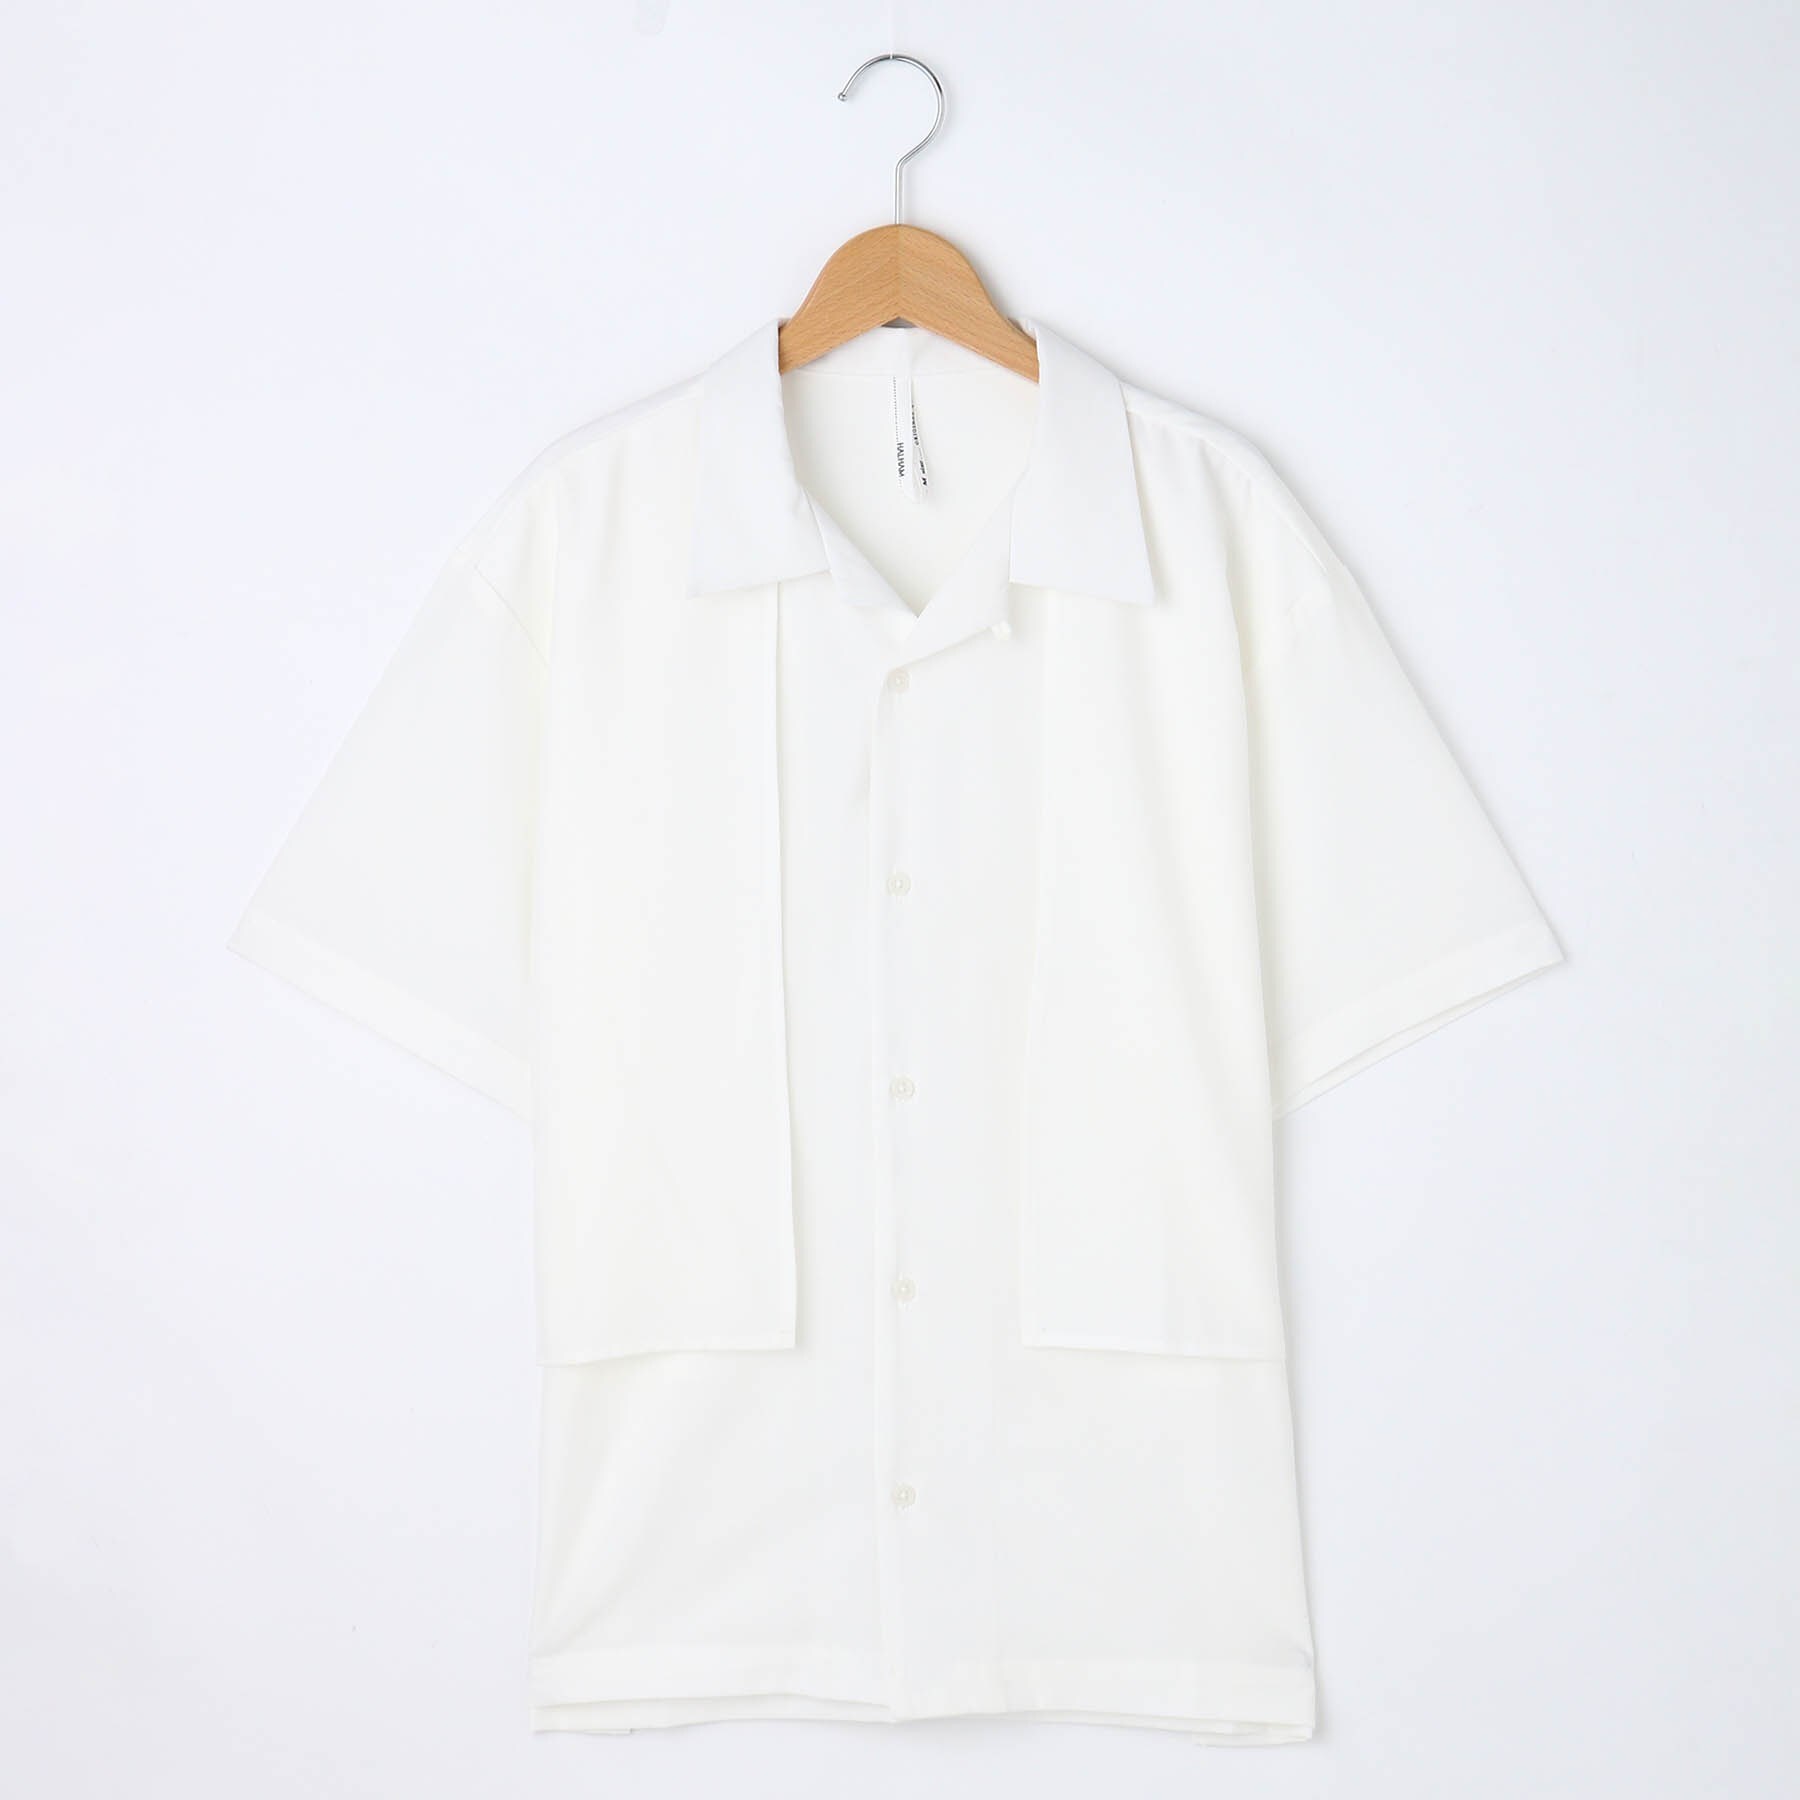 オフプライスストア(メンズ)(OFF PRICE STORE(Mens))のHALHAM オープンカラーケープシャツ ホワイト(001)